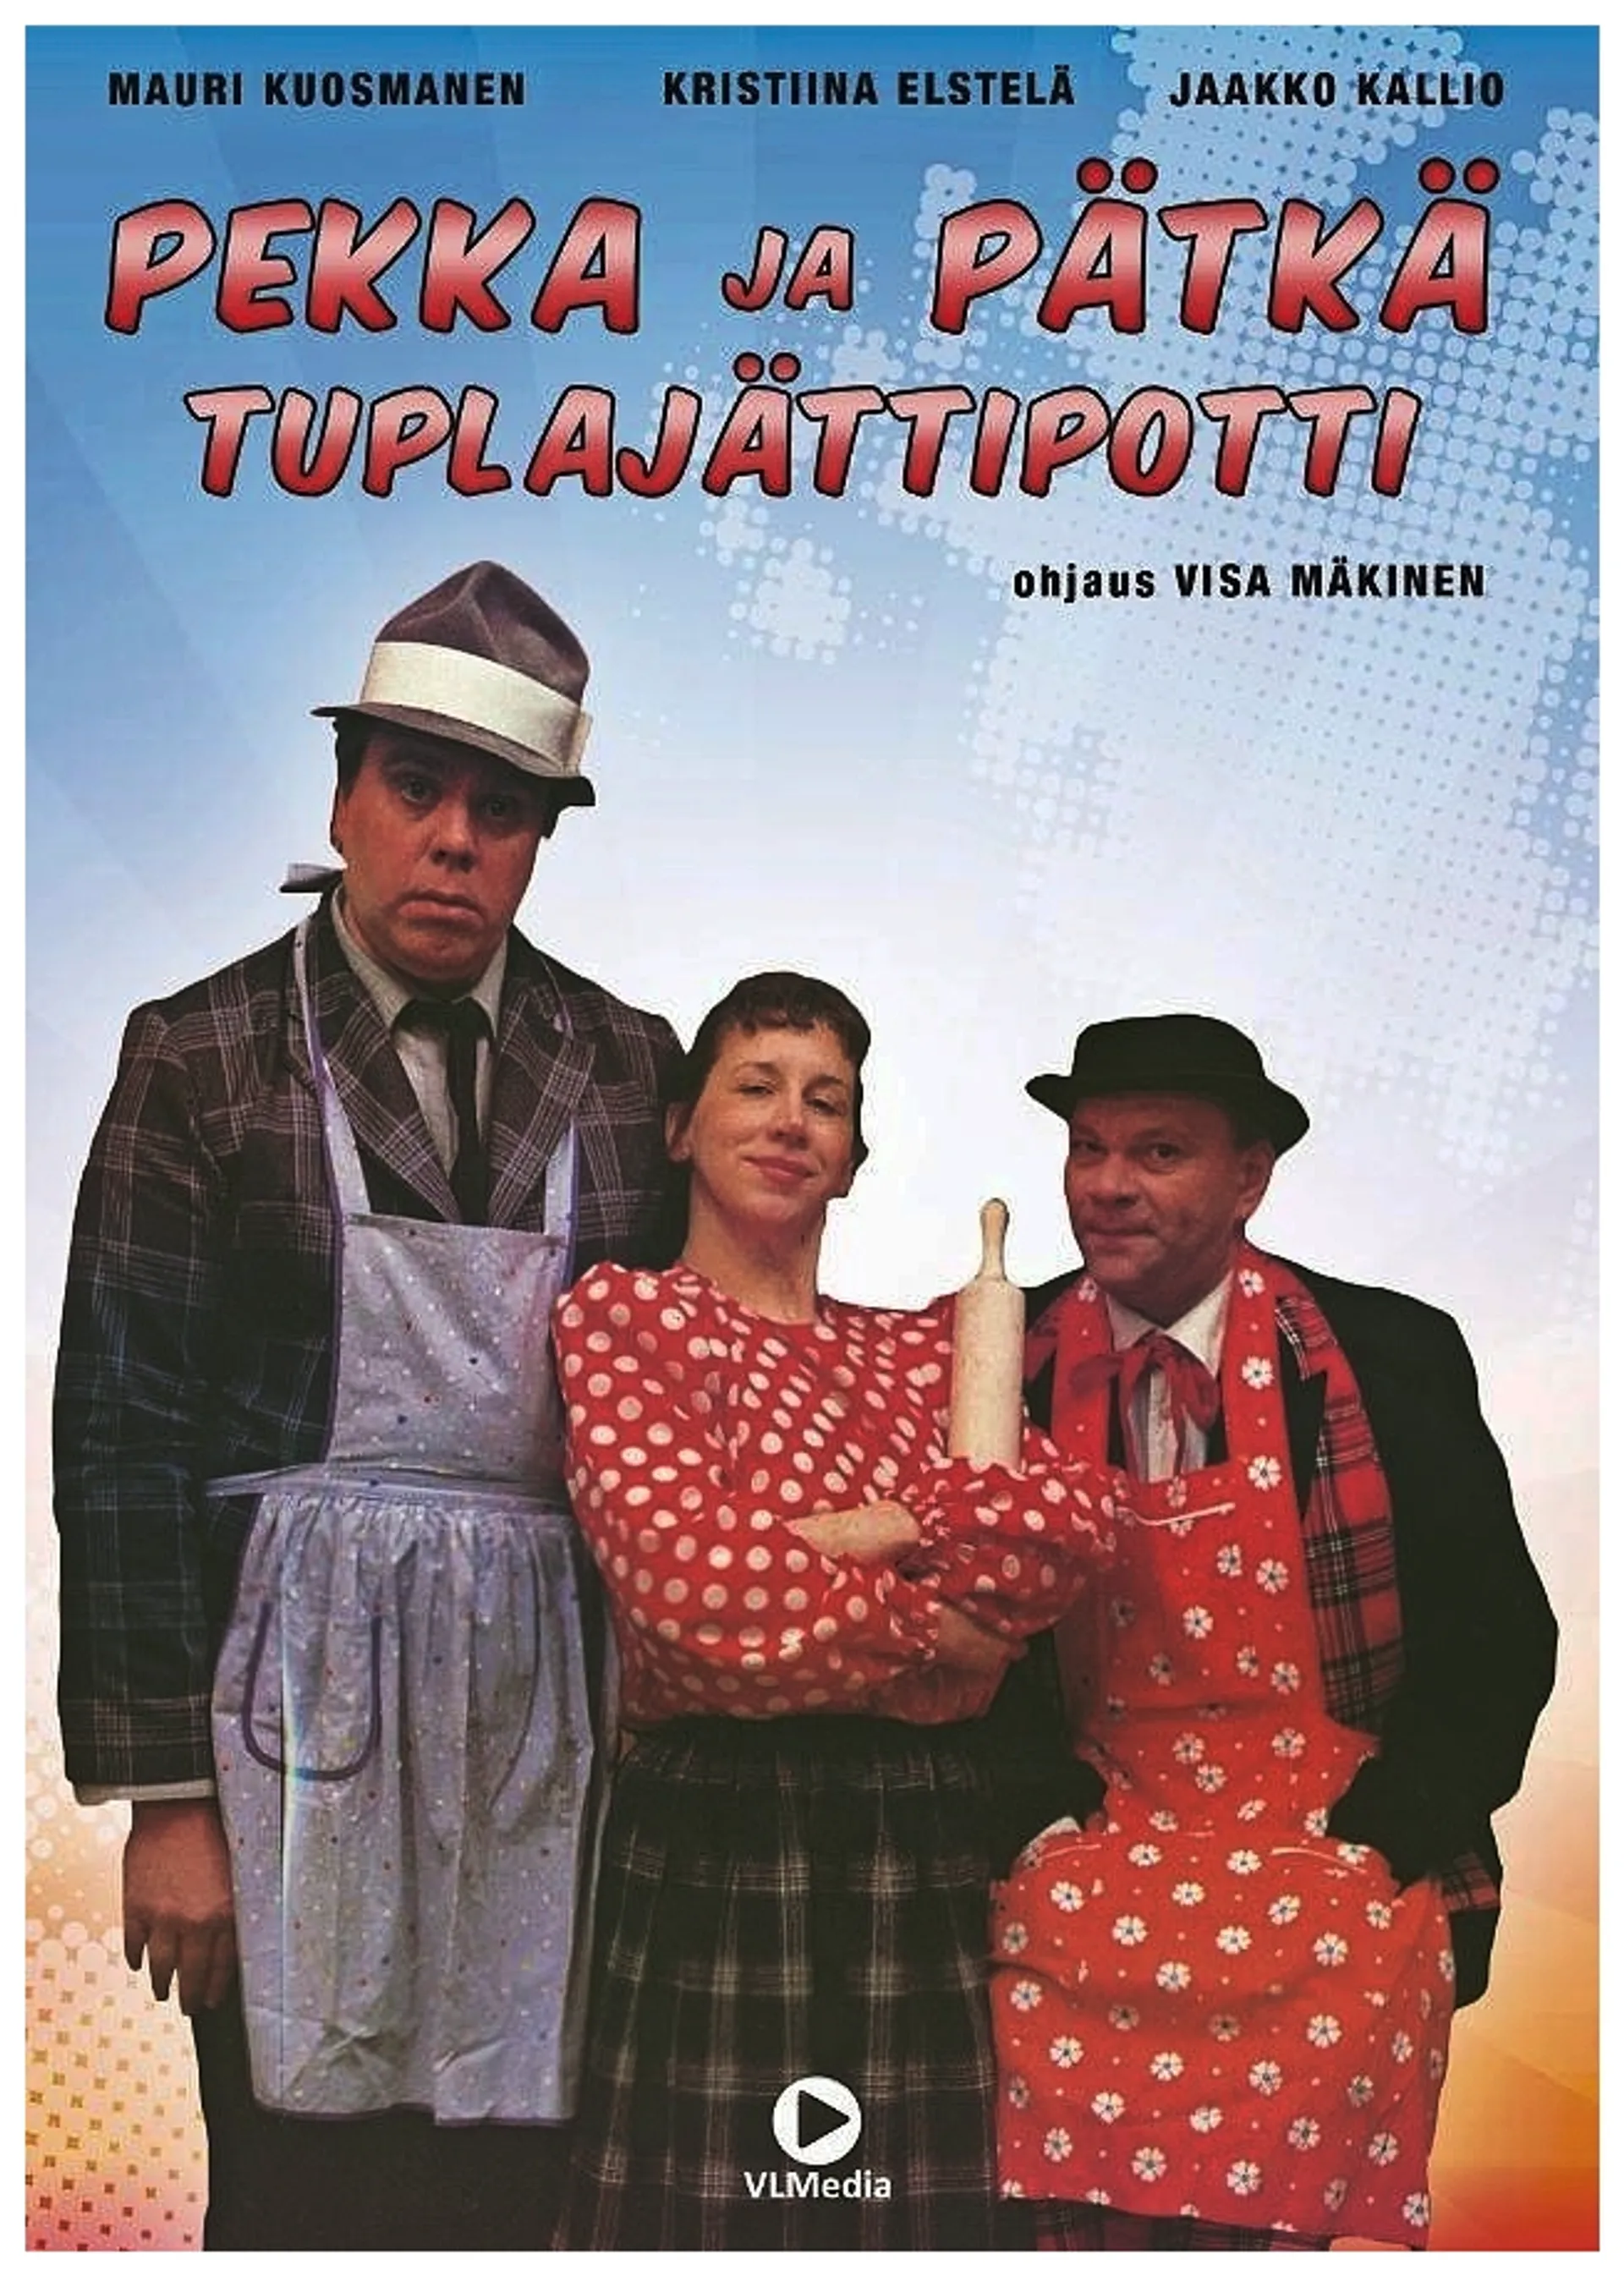 Pekka ja Pätkä - Tuplajättipotti DVD